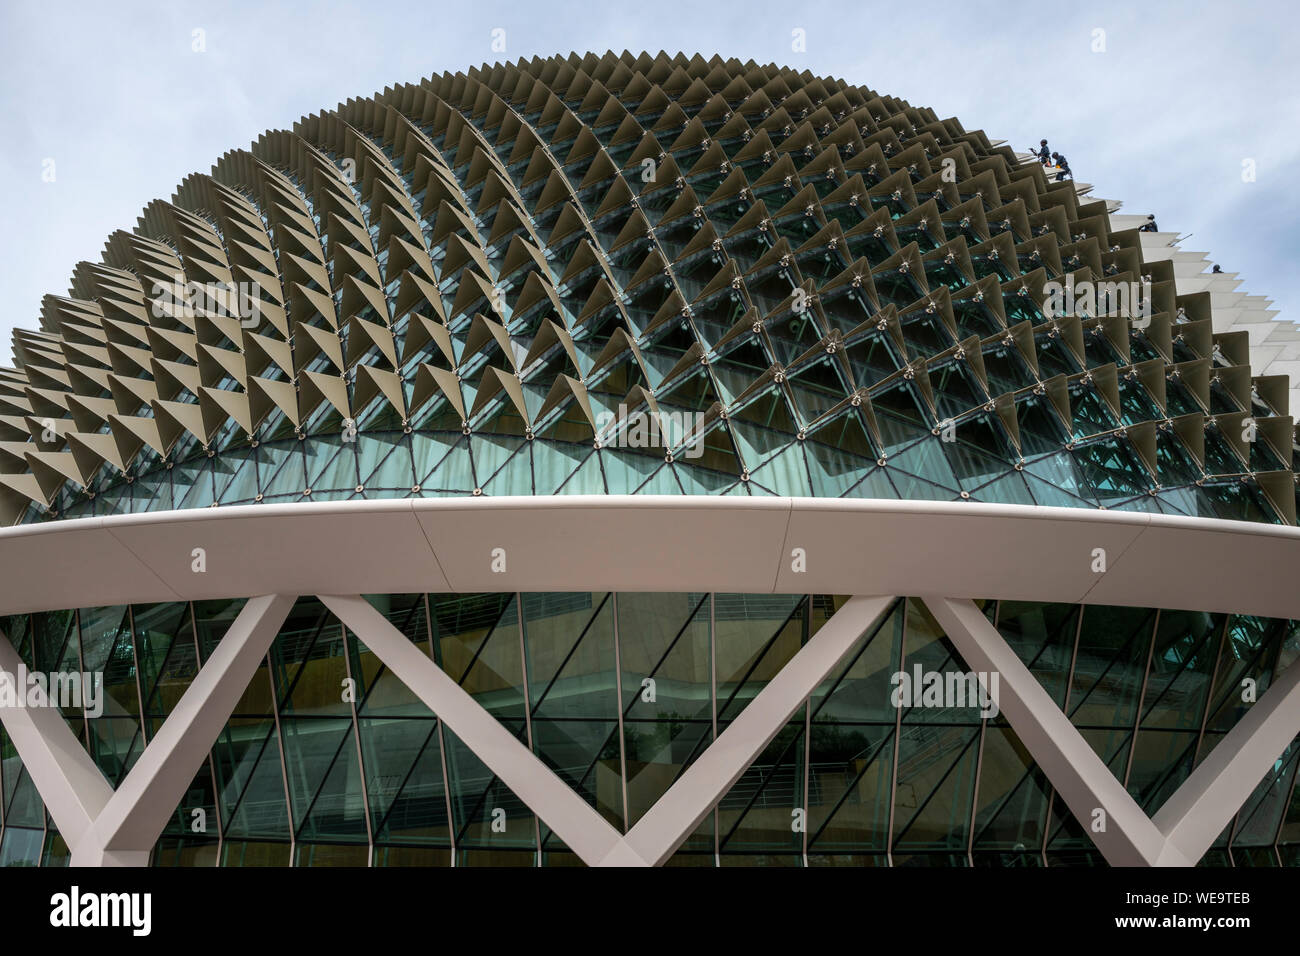 Esplanade - les théâtres sur la baie sont le bâtiment Durian de Singapour Banque D'Images